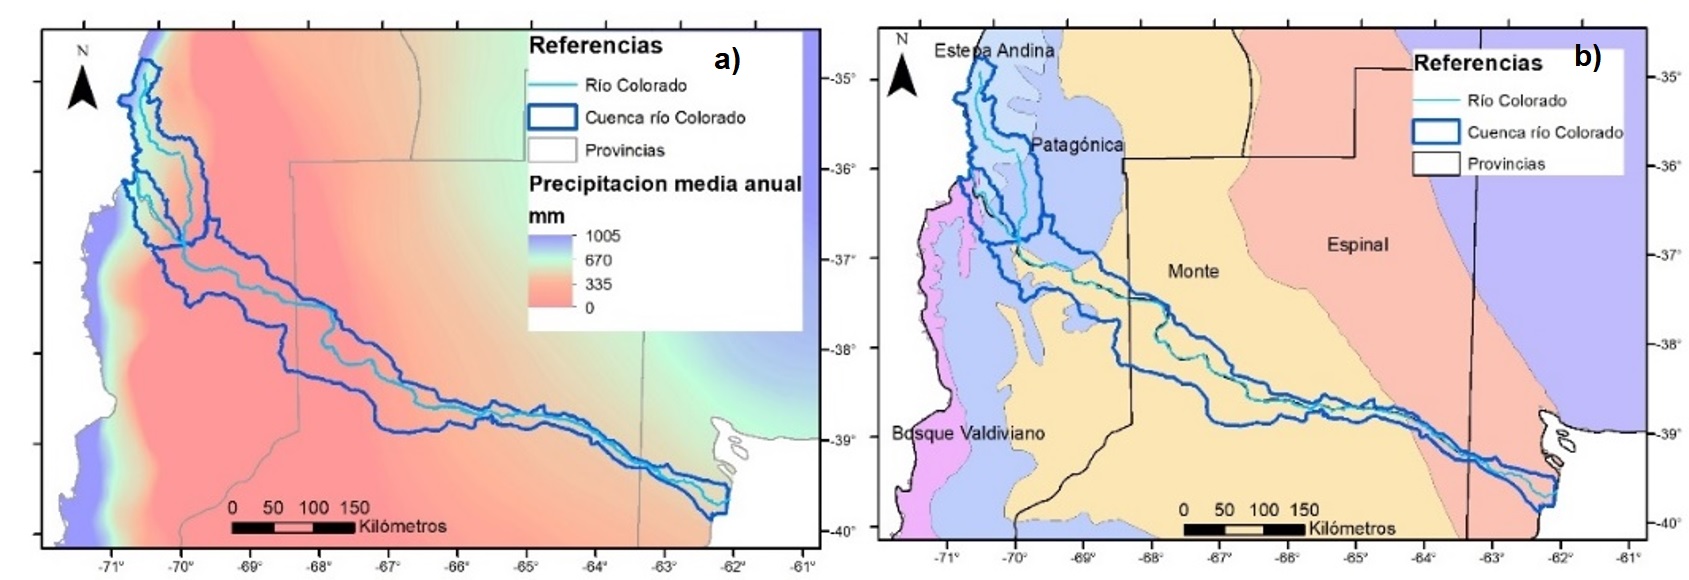 Cuenca del río Colorado. Zonificación de: a) Precipitación media anual, b)
Tipos de vegetación basados en las provincias fitogeográficas.